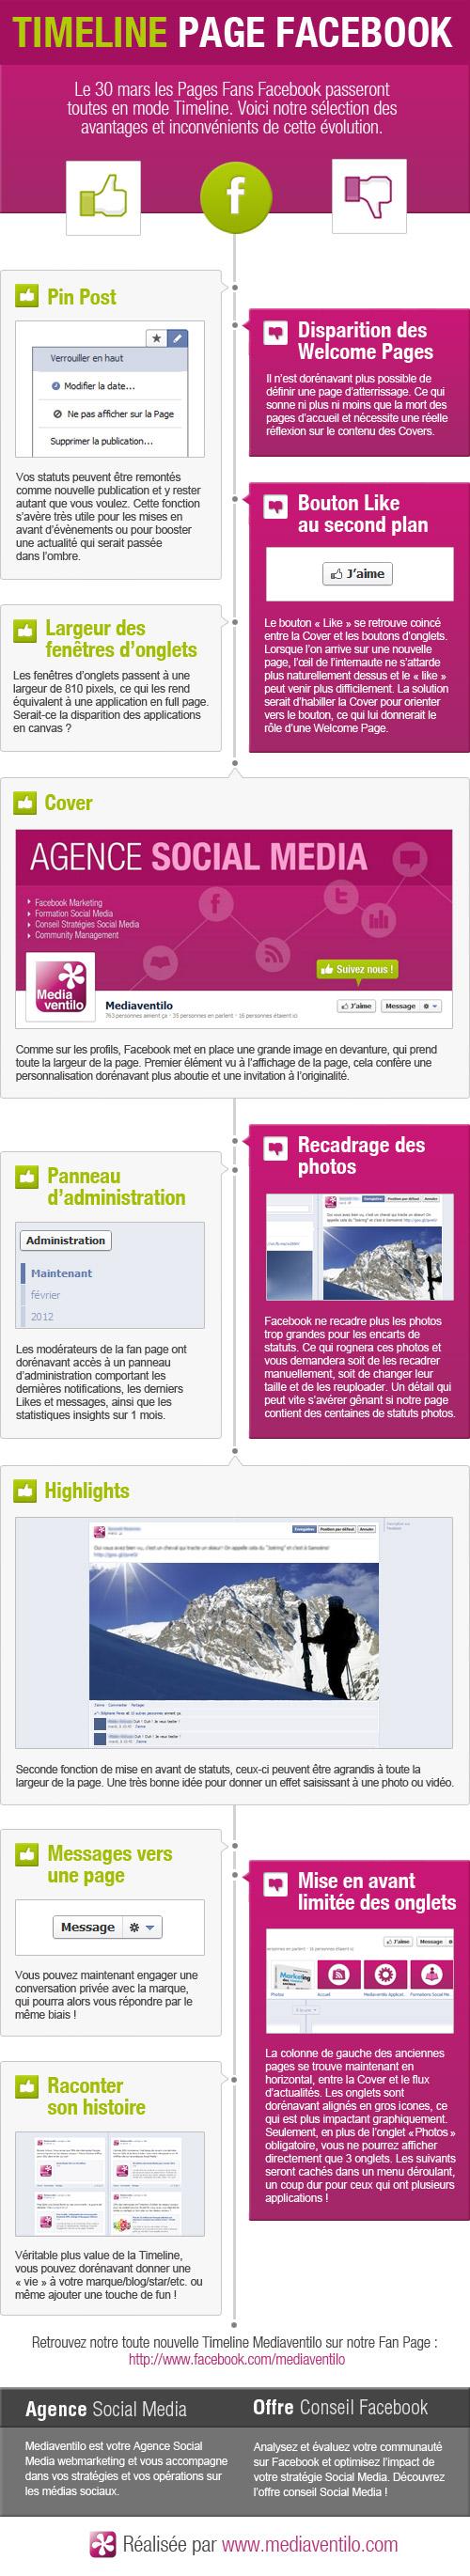 Infographie Timeline Facebook [Infographie] Evolution de Facebook: arrivée de la Timeline pour les Pages!